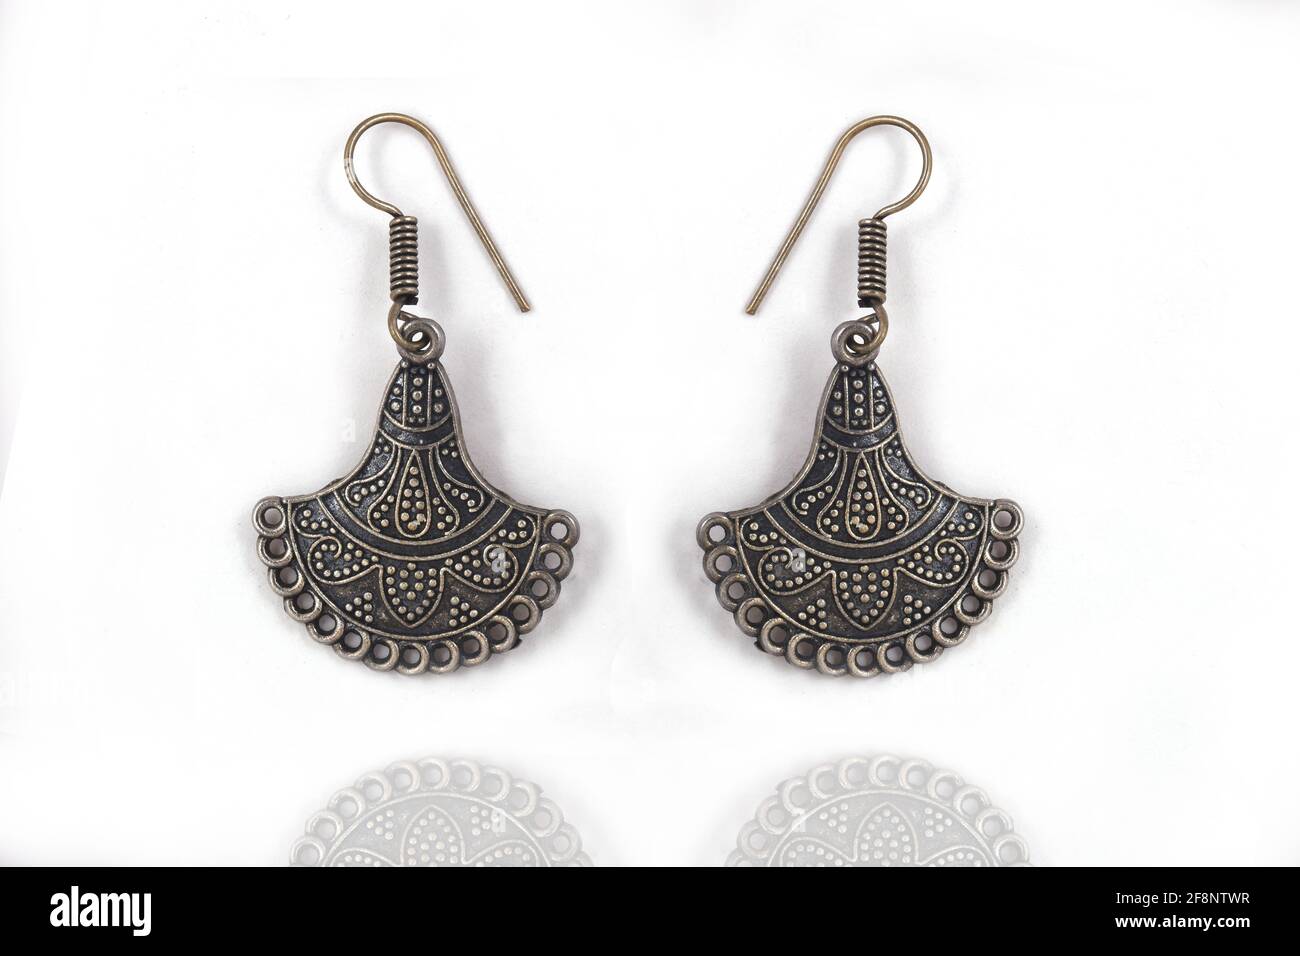 Schöne orientalische Silber Ohrringe Schmuck (indische, arabische, afrikanische, ägyptische), oxidierte Silber Ohrringe, Mode exotische asiatische Accessoires Stockfoto